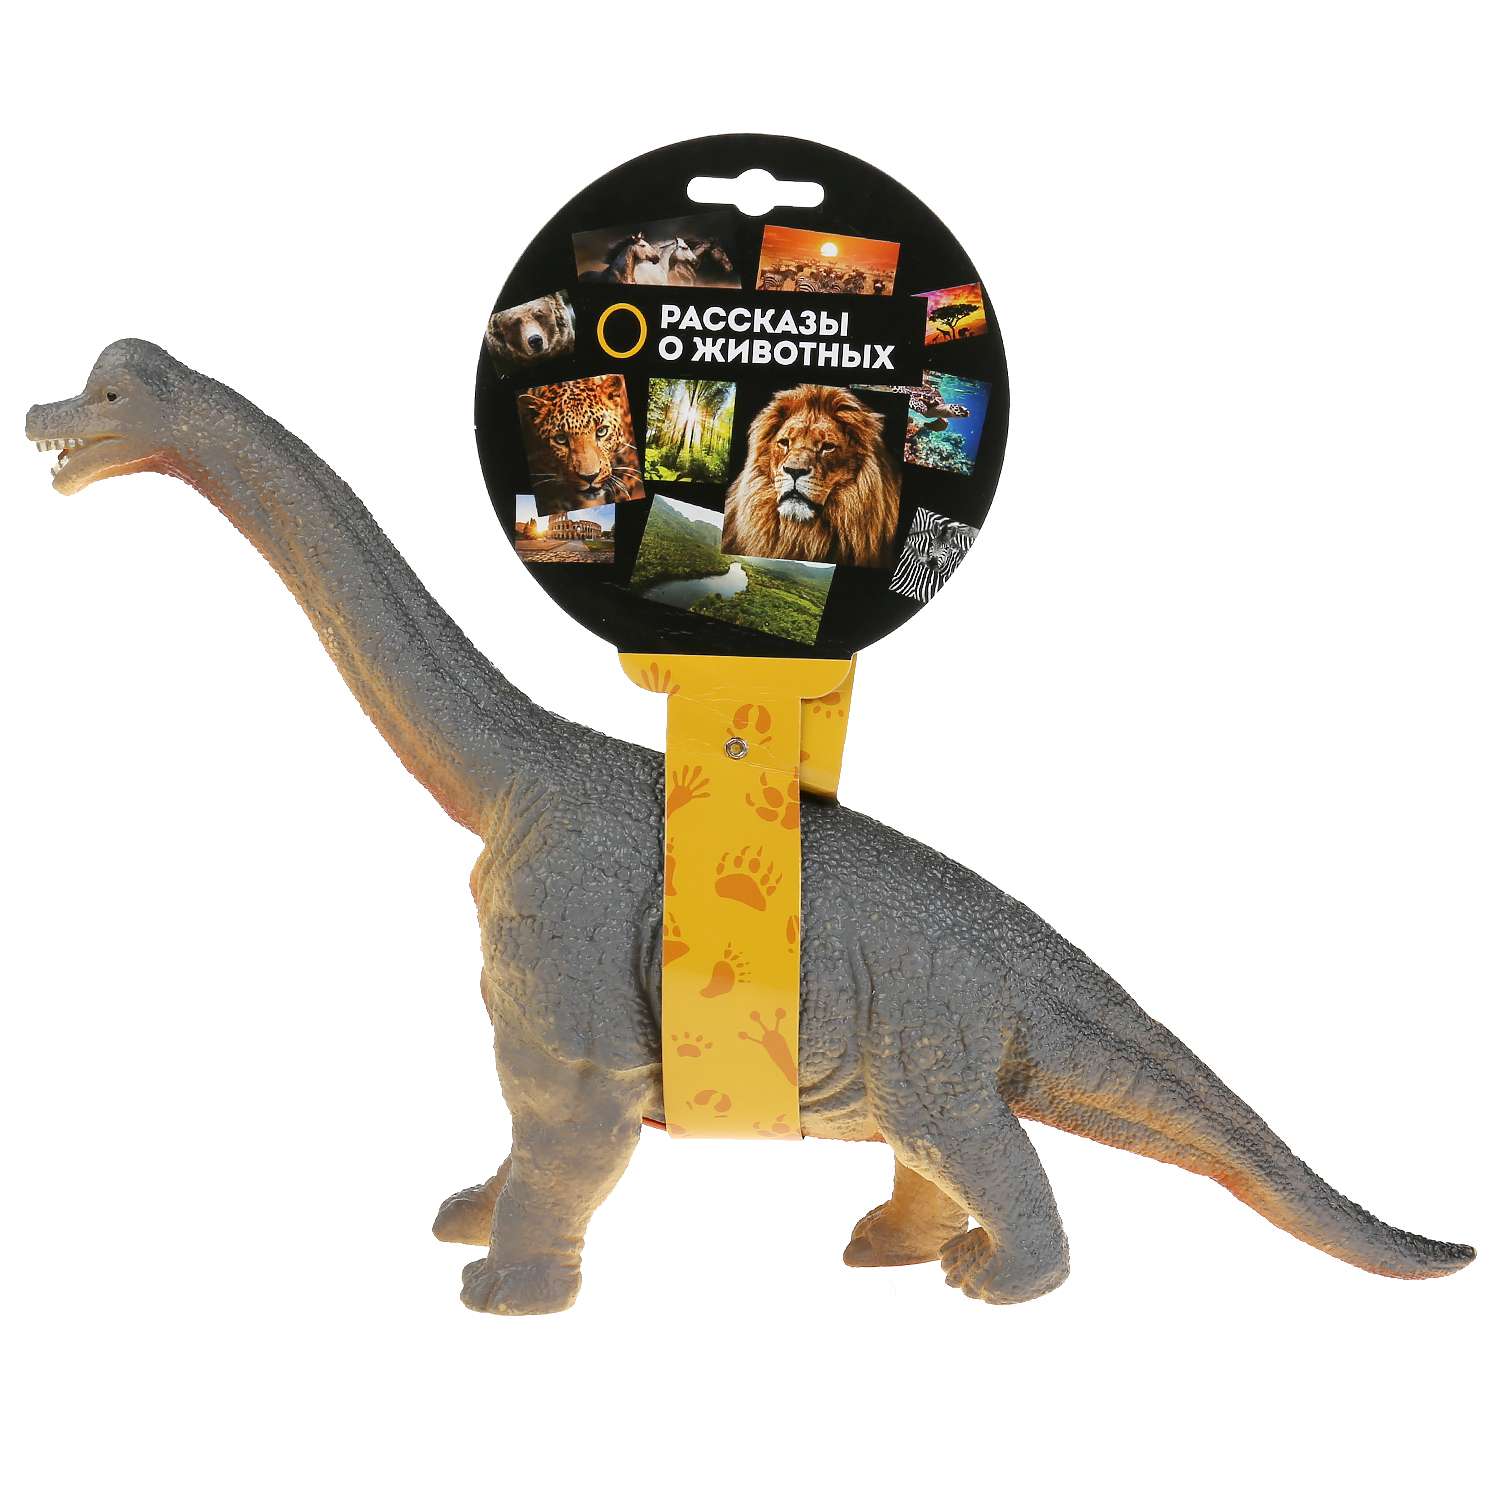 Игрушка Играем Вместе Пластизоль динозавр брахиозавр 298172 - фото 2